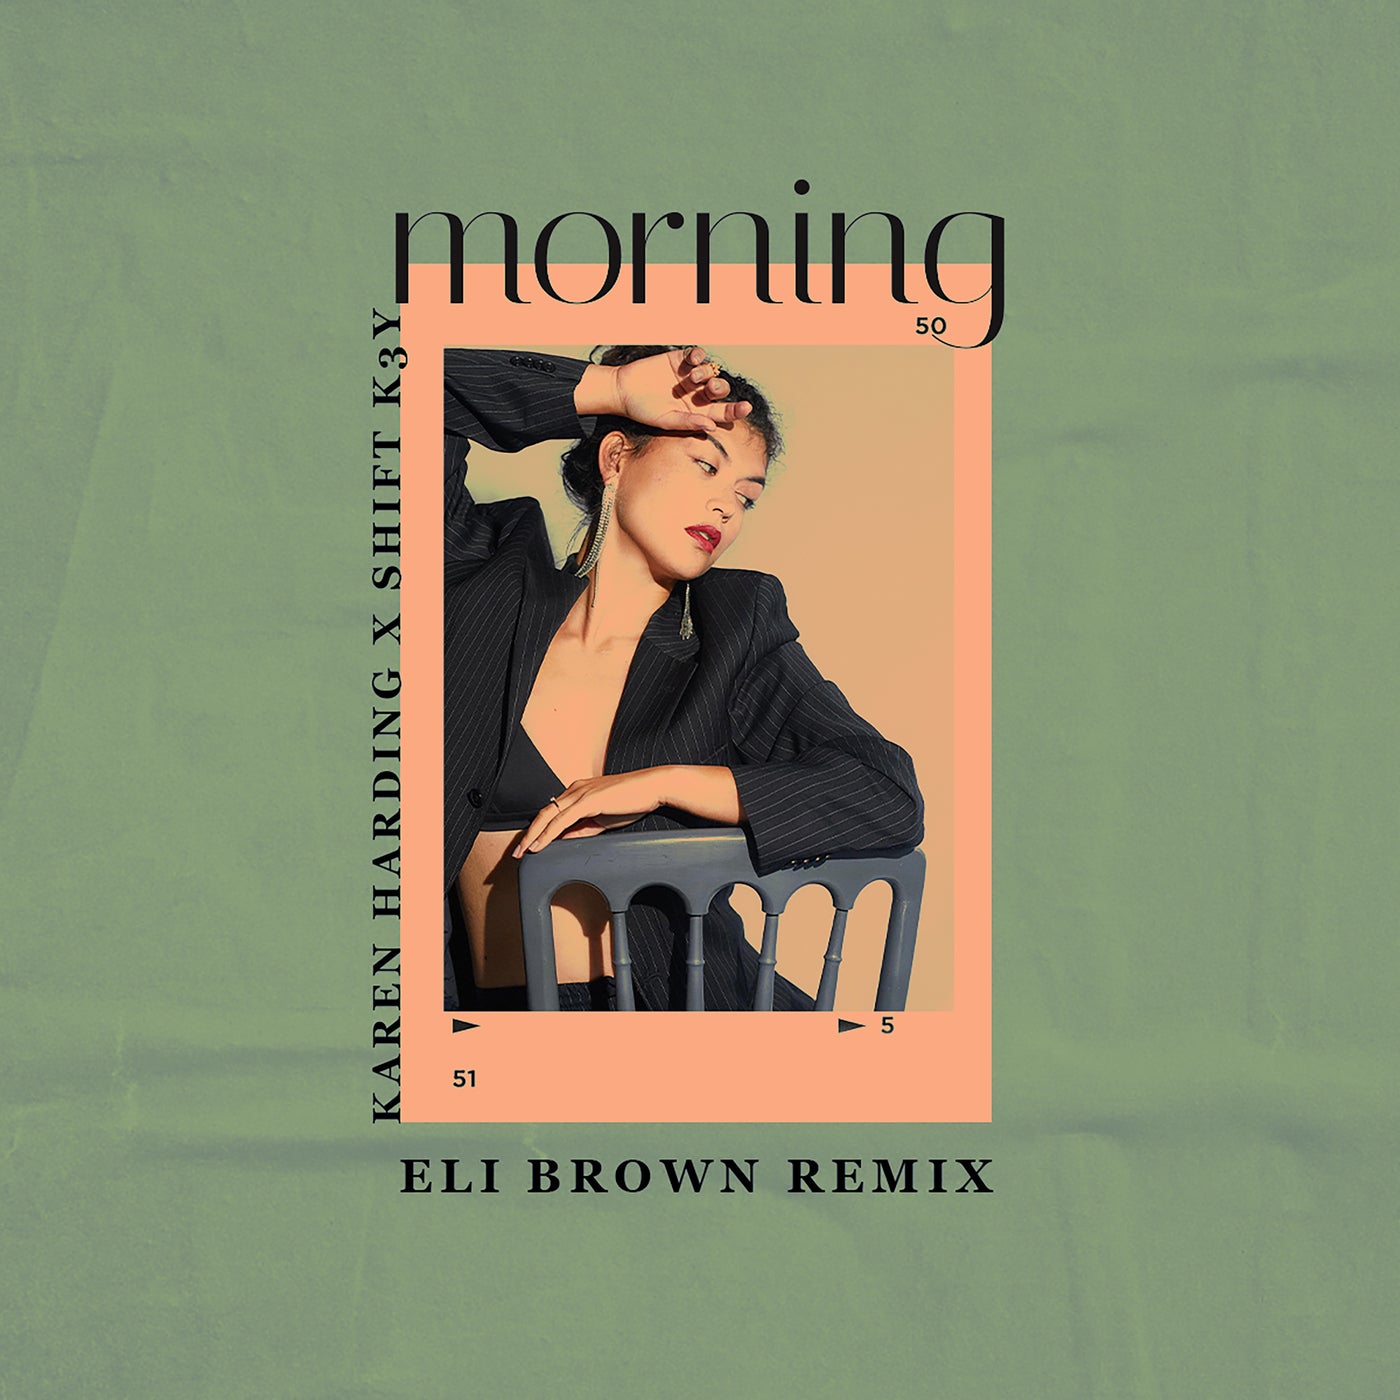 Shift K3Y, Karen Harding - Morning - Eli Brown Dub [UL02569]